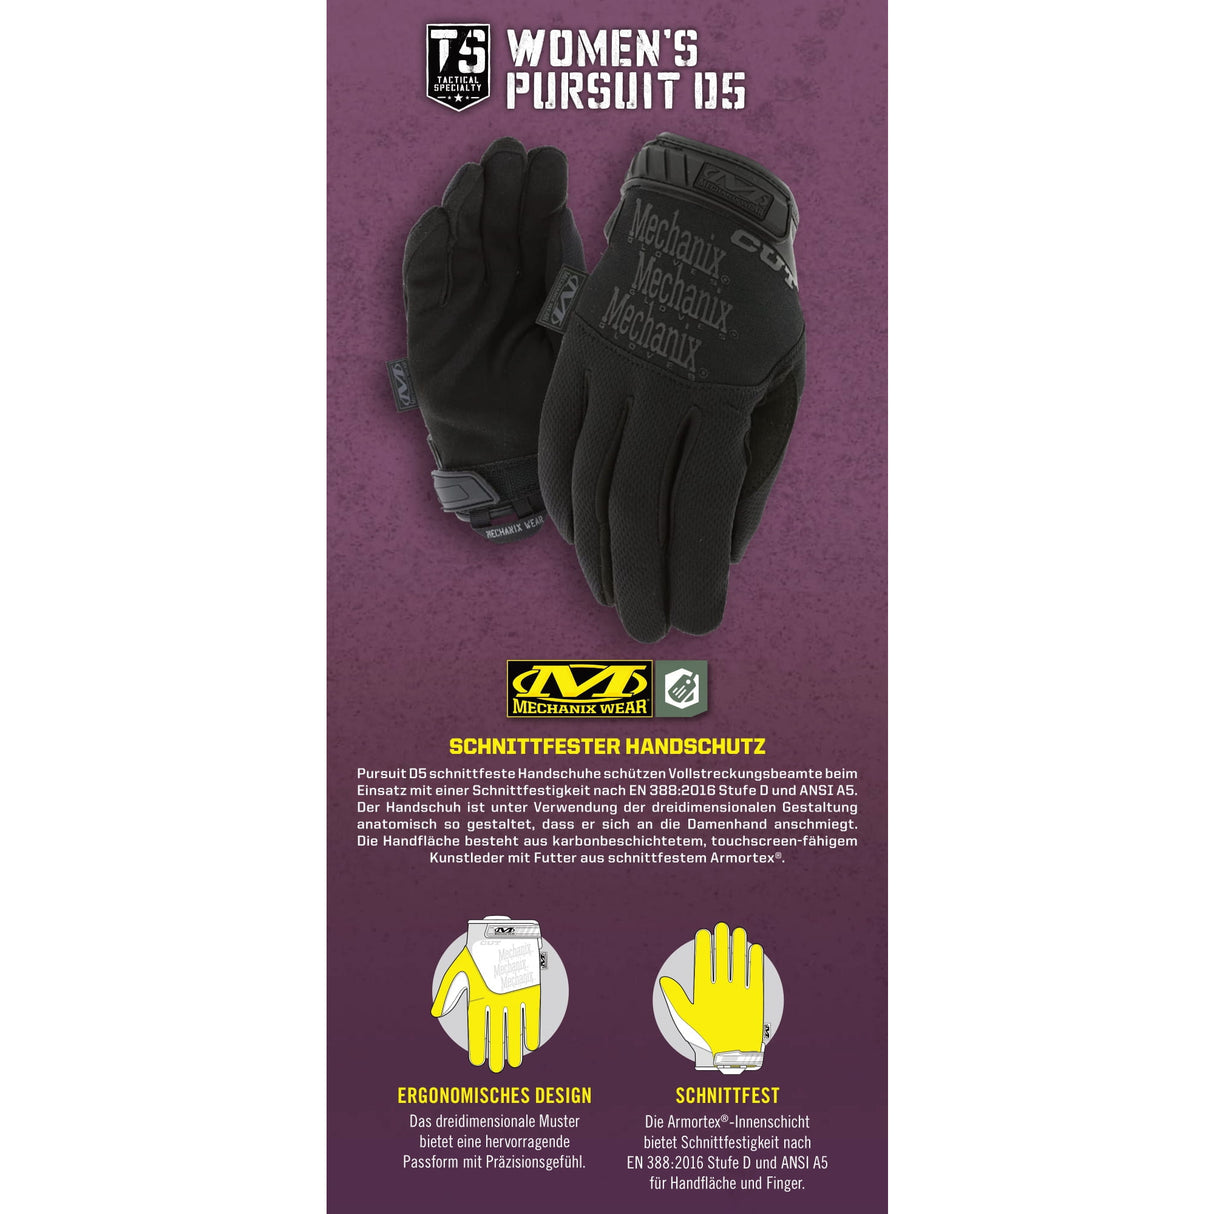 Mechanix PURSUIT D5 Women's cut resistant gloves